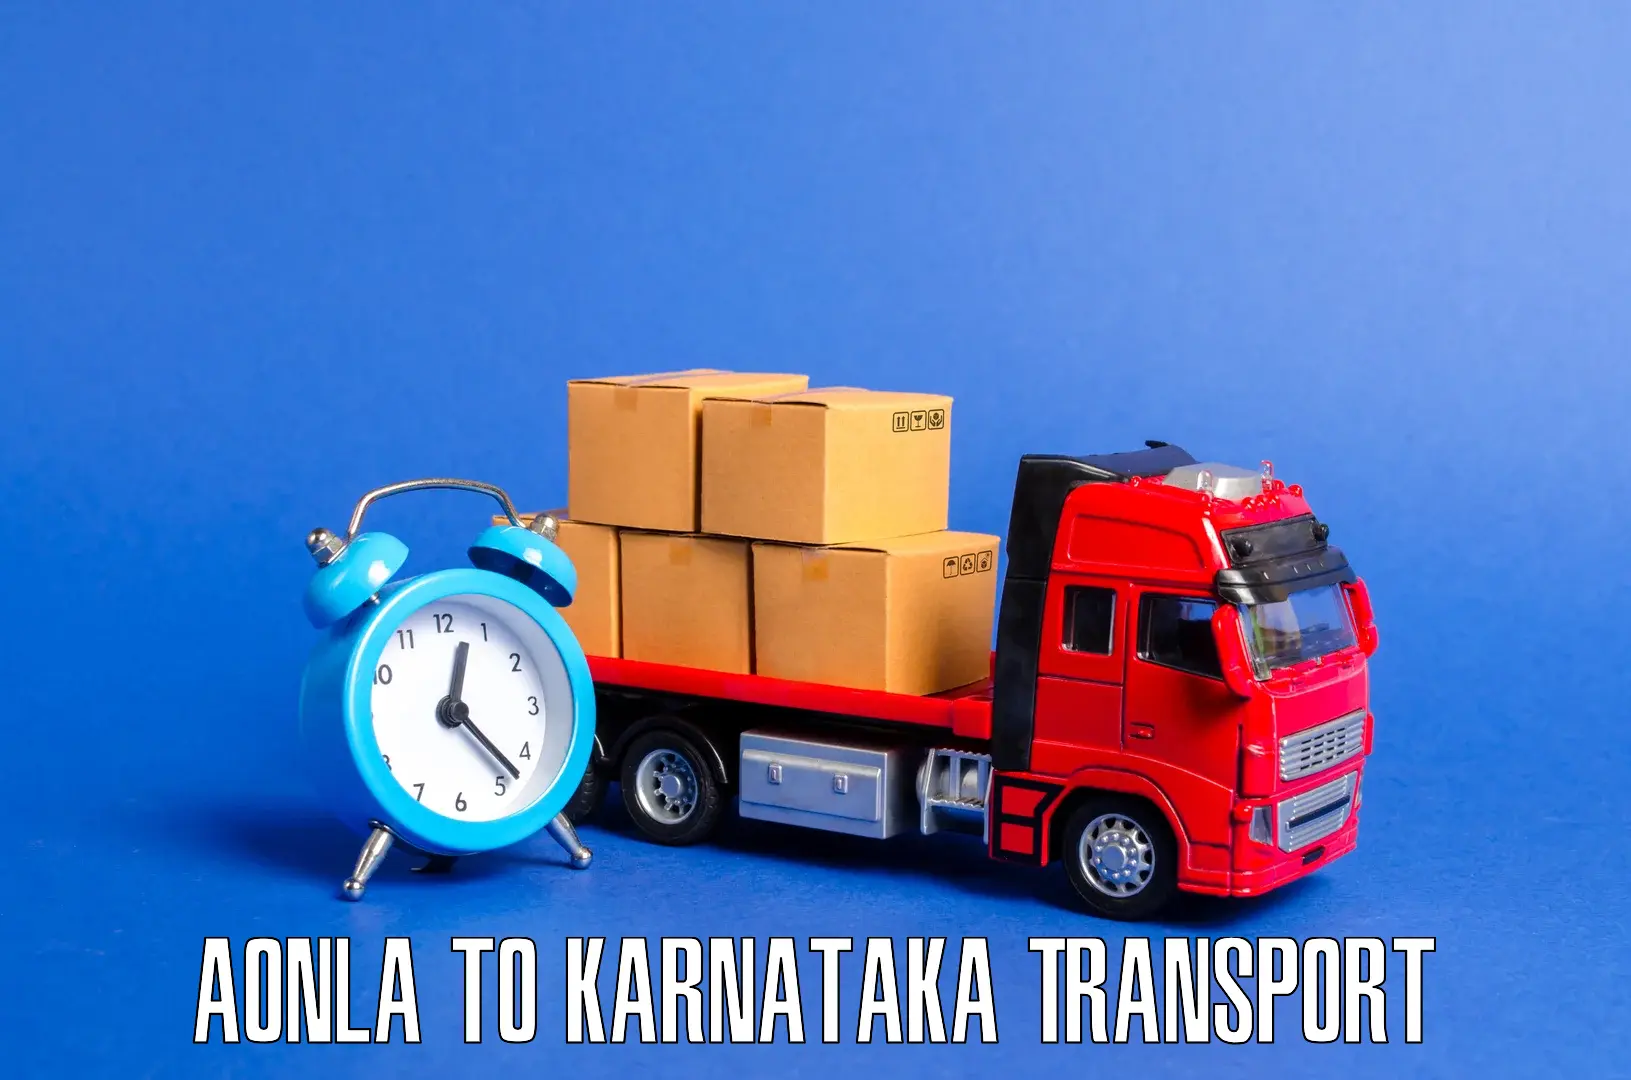 India truck logistics services in Aonla to Ballari